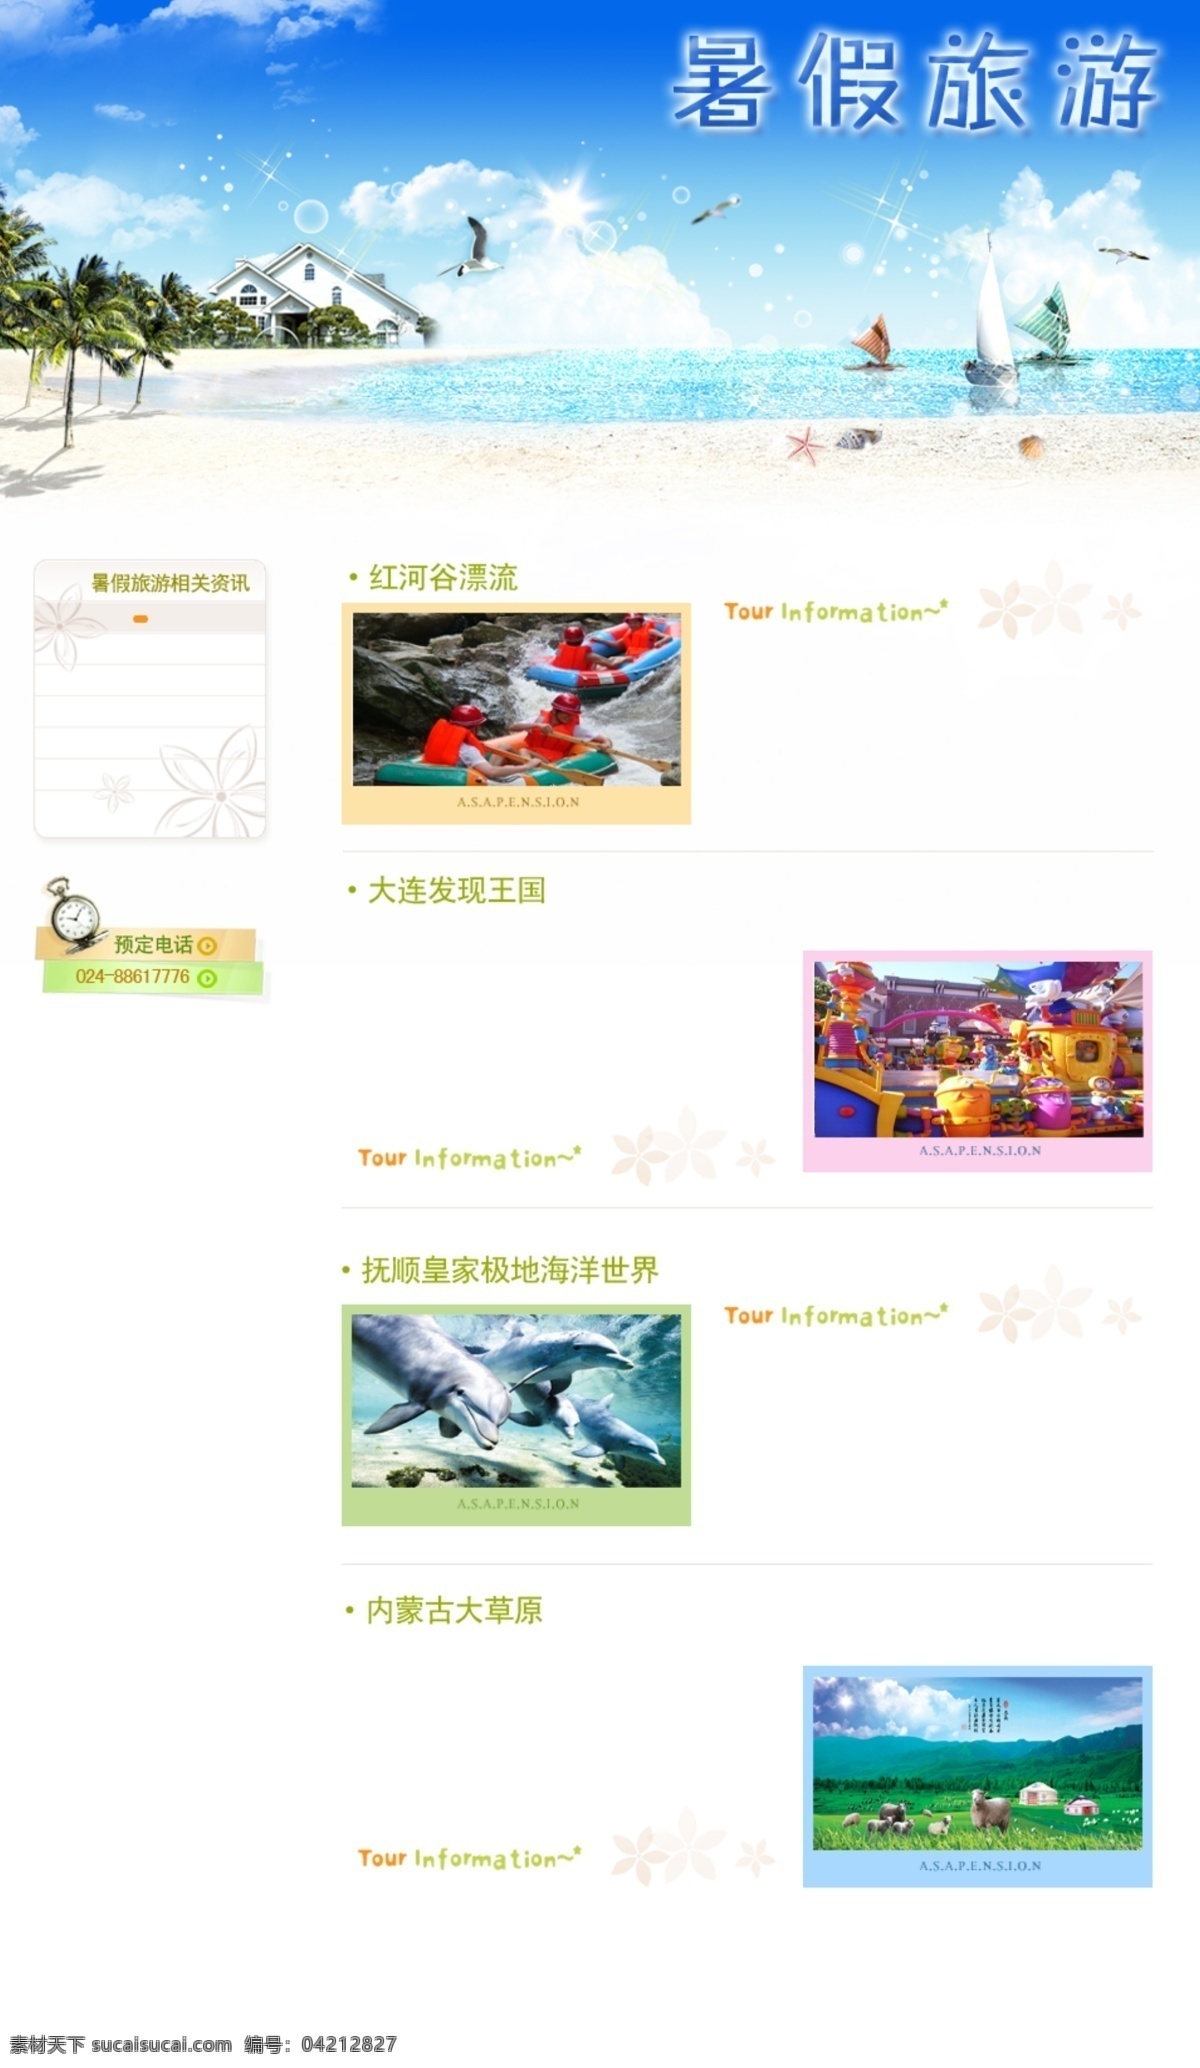 旅游网站 暑假 旅游 暑假旅游 中文模版 网页模板 源文件 白色